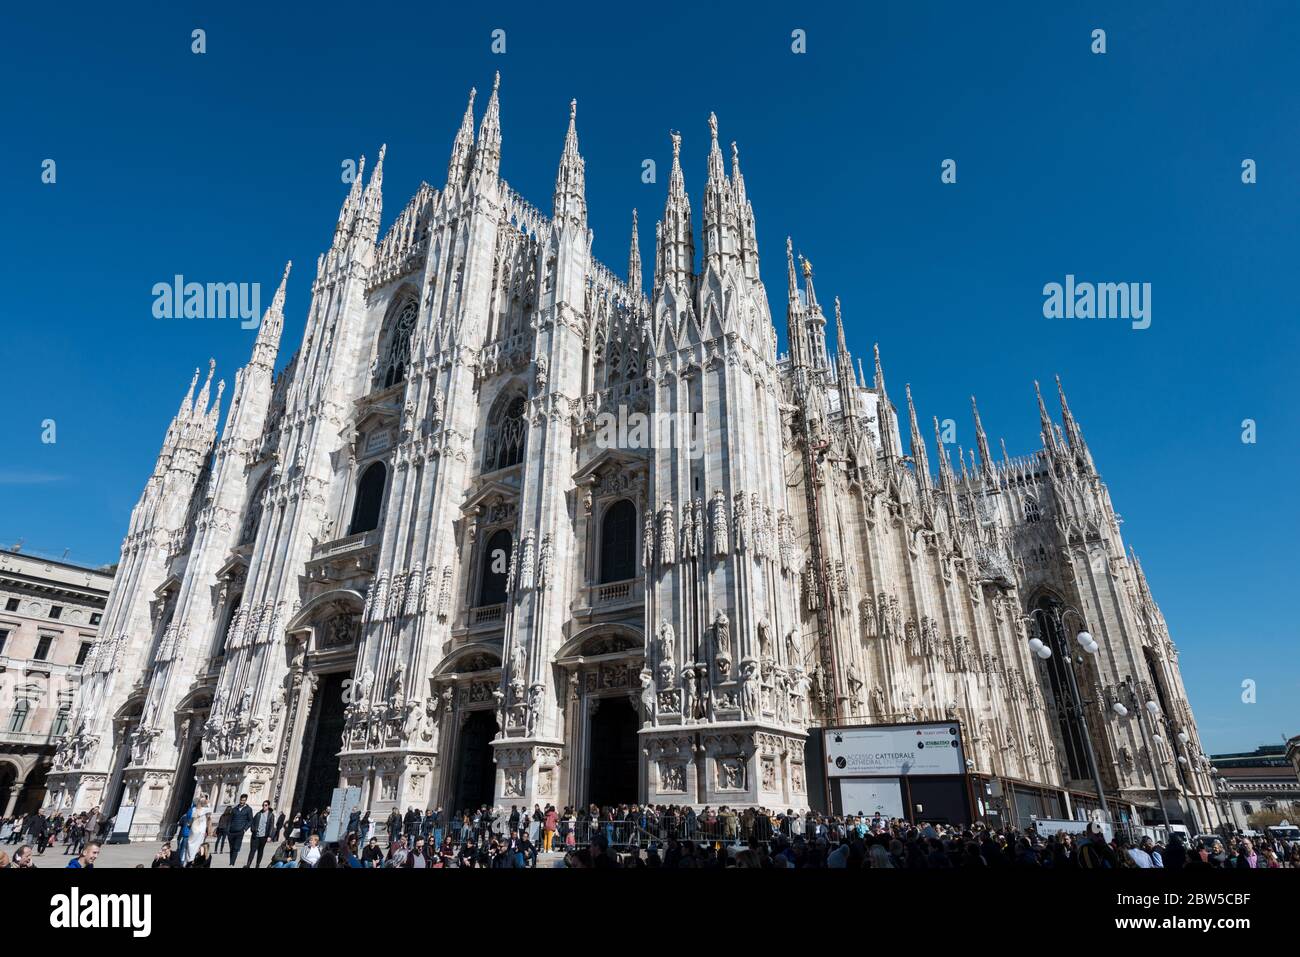 MILÁN, ITALIA - 16, MARZO de 2018: Imagen horizontal de la asombrosa arquitectura del Duomo di Milano, una importante catedral católica en Milán, Italia. Foto de stock